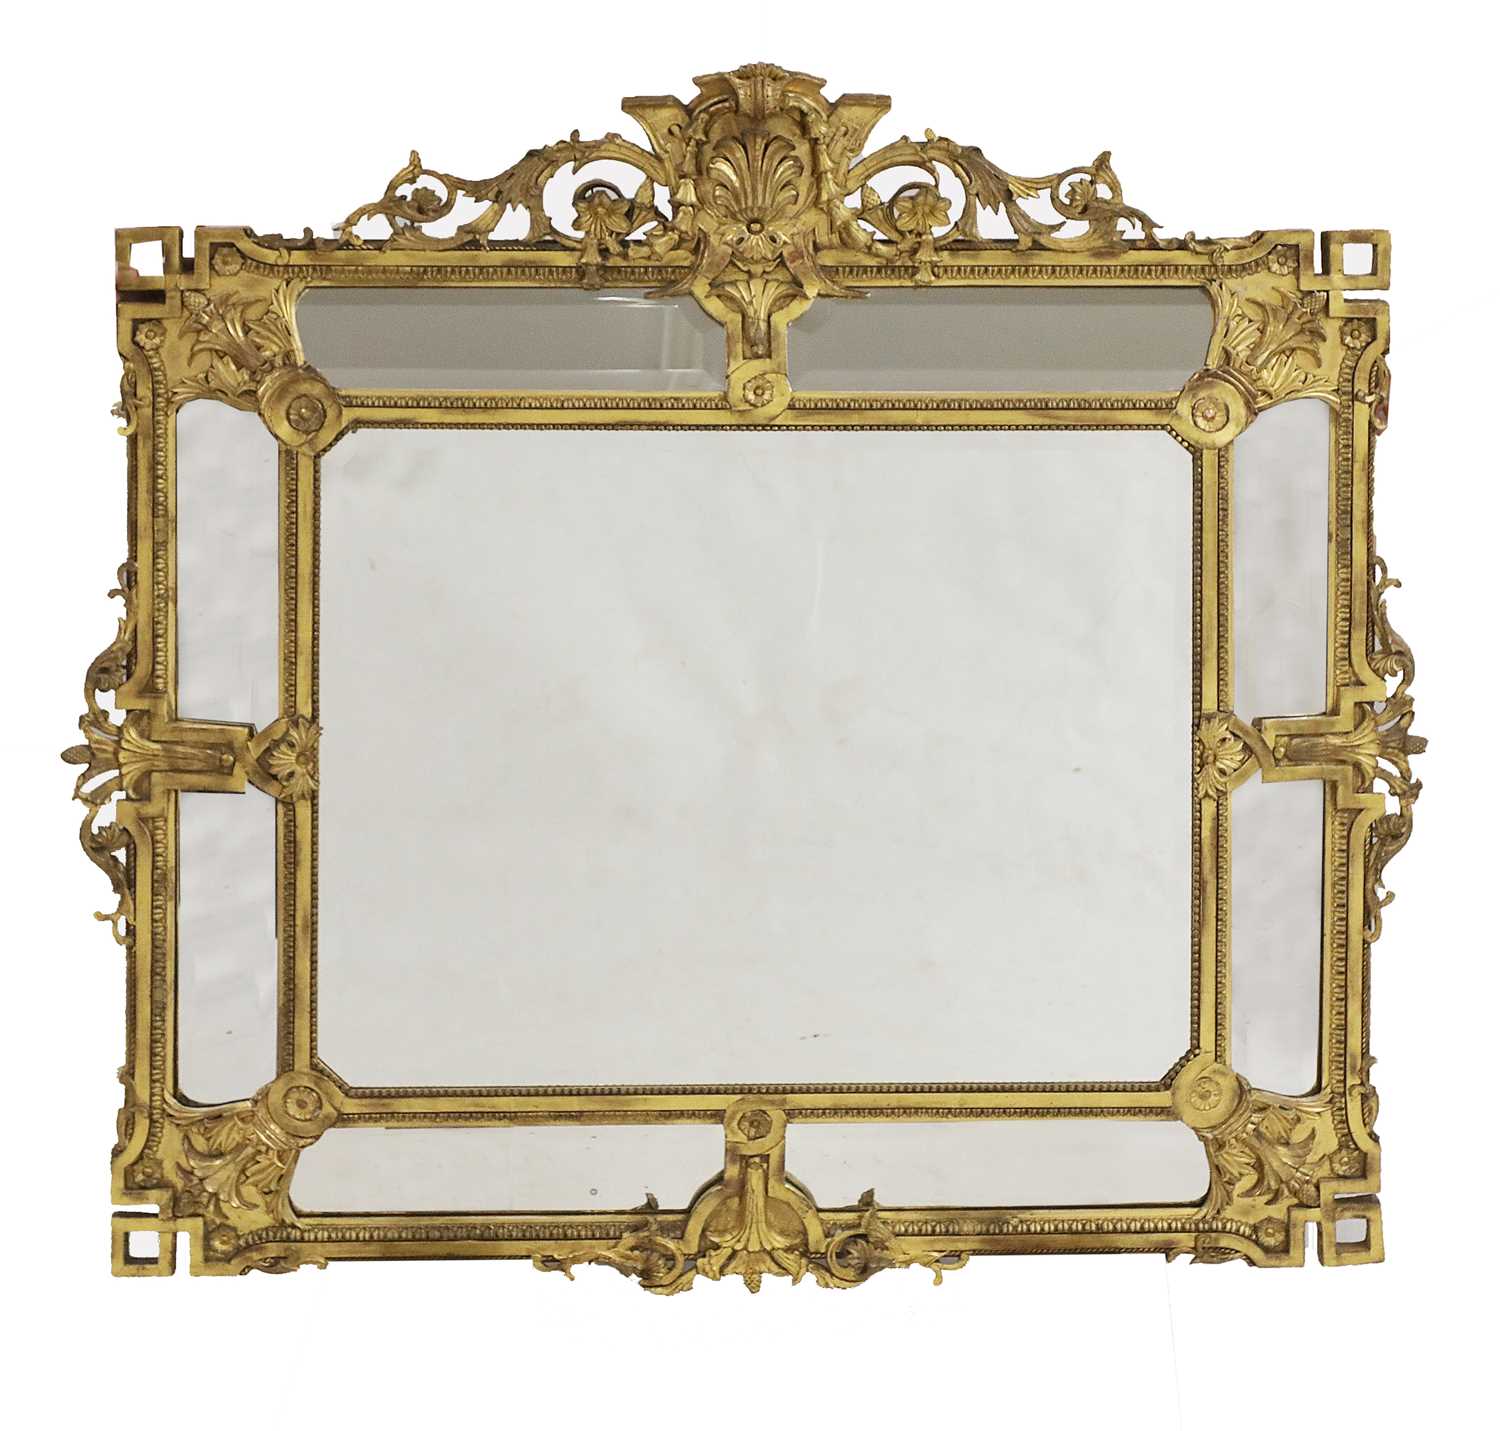 Lot 91 - A large rectangular gilt-framed wall mirror